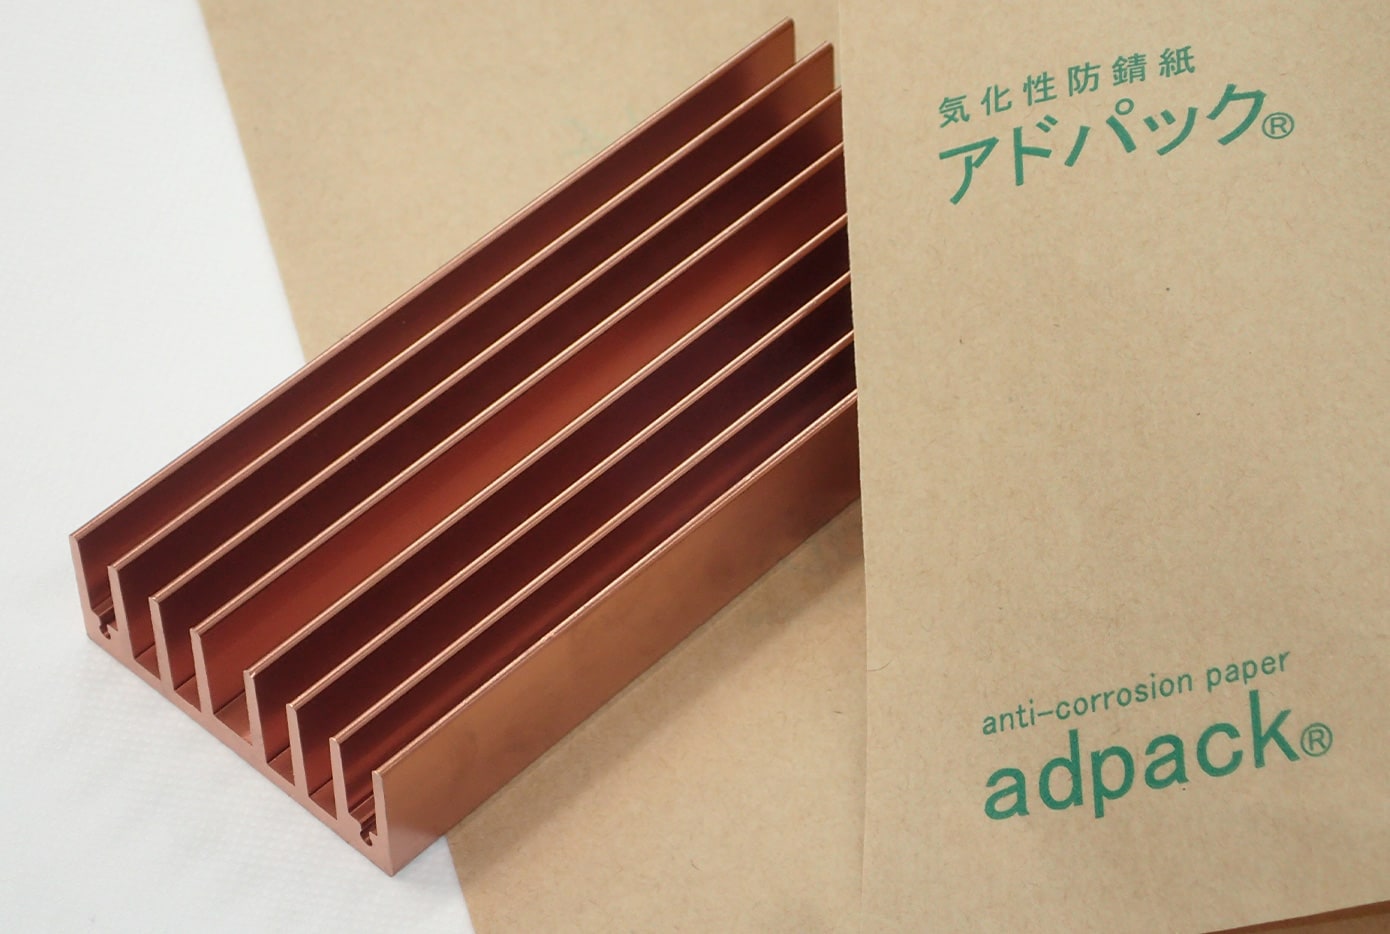 アドパックC（銅・銅合金用含浸タイプ）|金属製品の錆止めに効果的な 